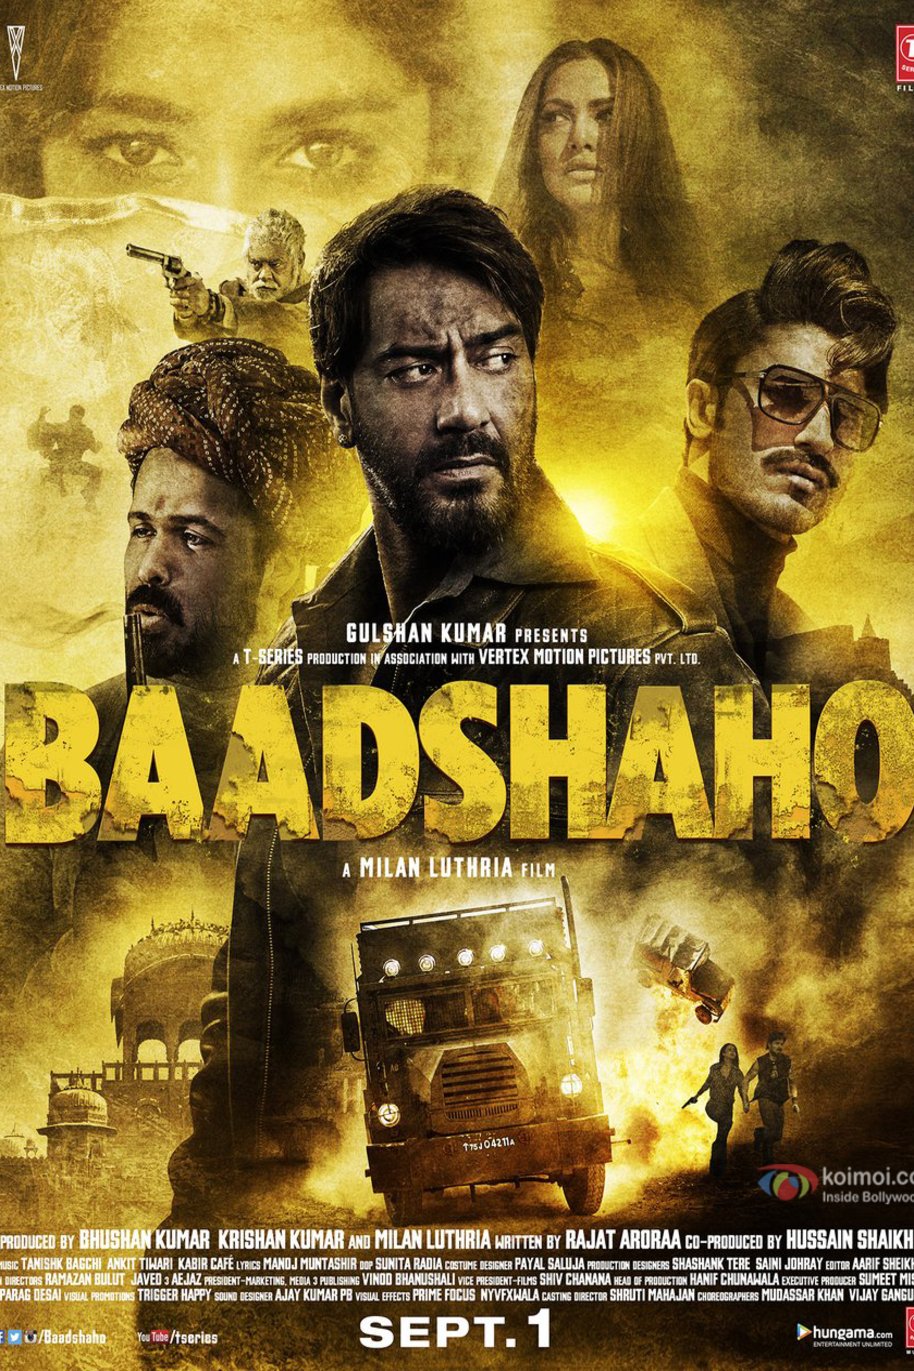 L'affiche originale du film Baadshaho en Hindi